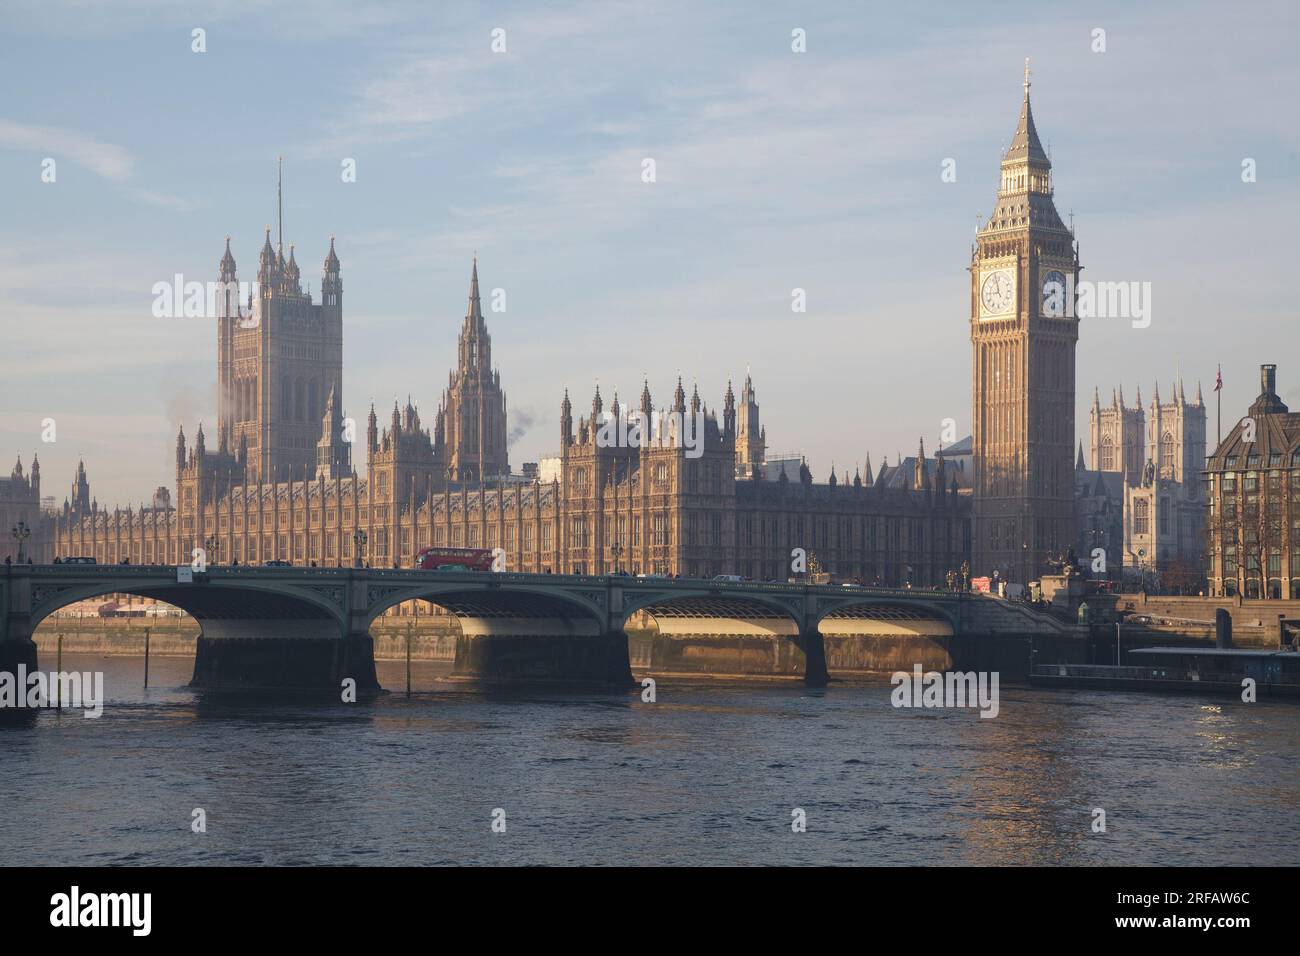 Il Palazzo di Westminster (o Houses of Parliament) con il Big Ben si trova sulla riva nord del Tamigi a Londra Foto Stock